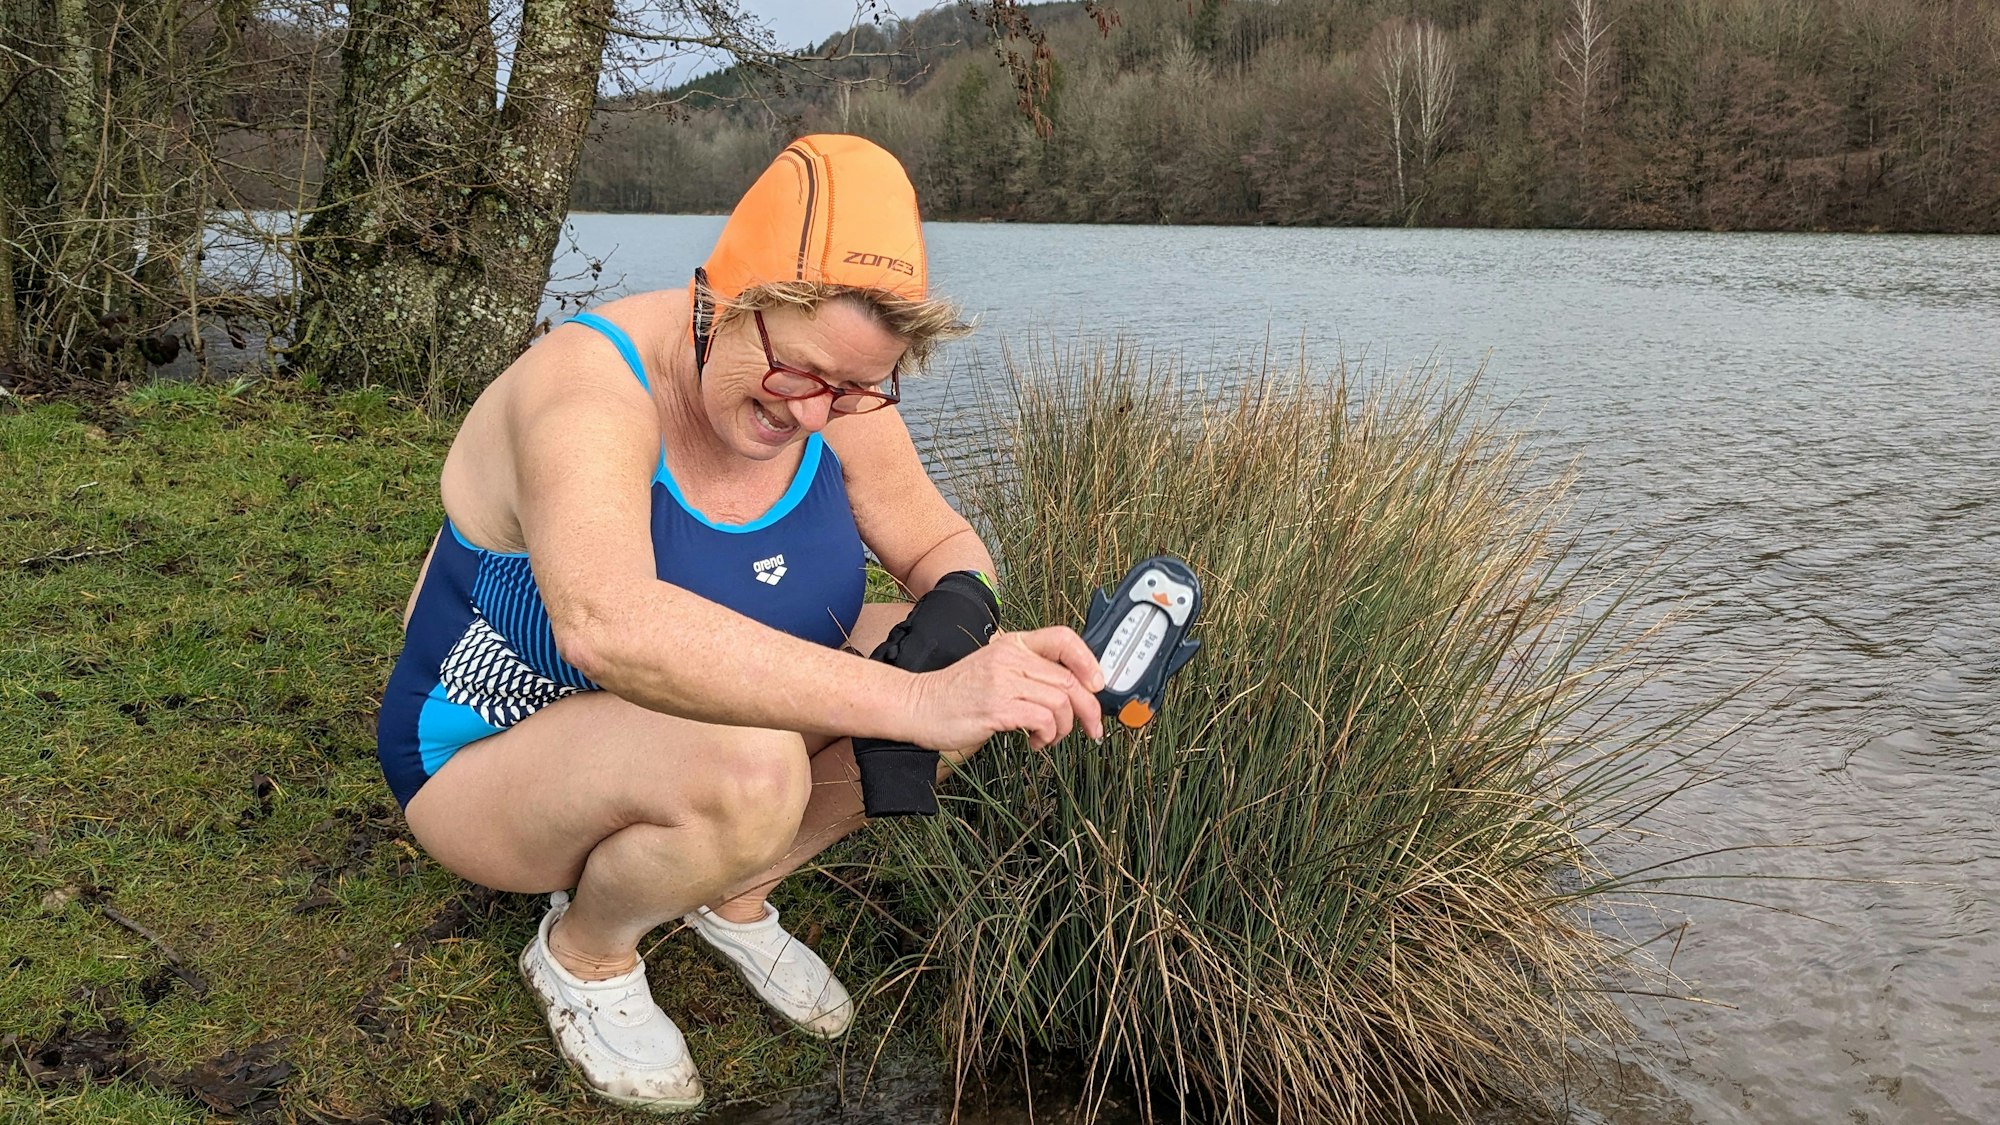 Winterbaderin Jutta Lorenz kniet mit einem Thermometer am Ufer des Freilinger Sees. Sie trägt einen blauen Badeanzug und eine orangefarbene Badehaube.